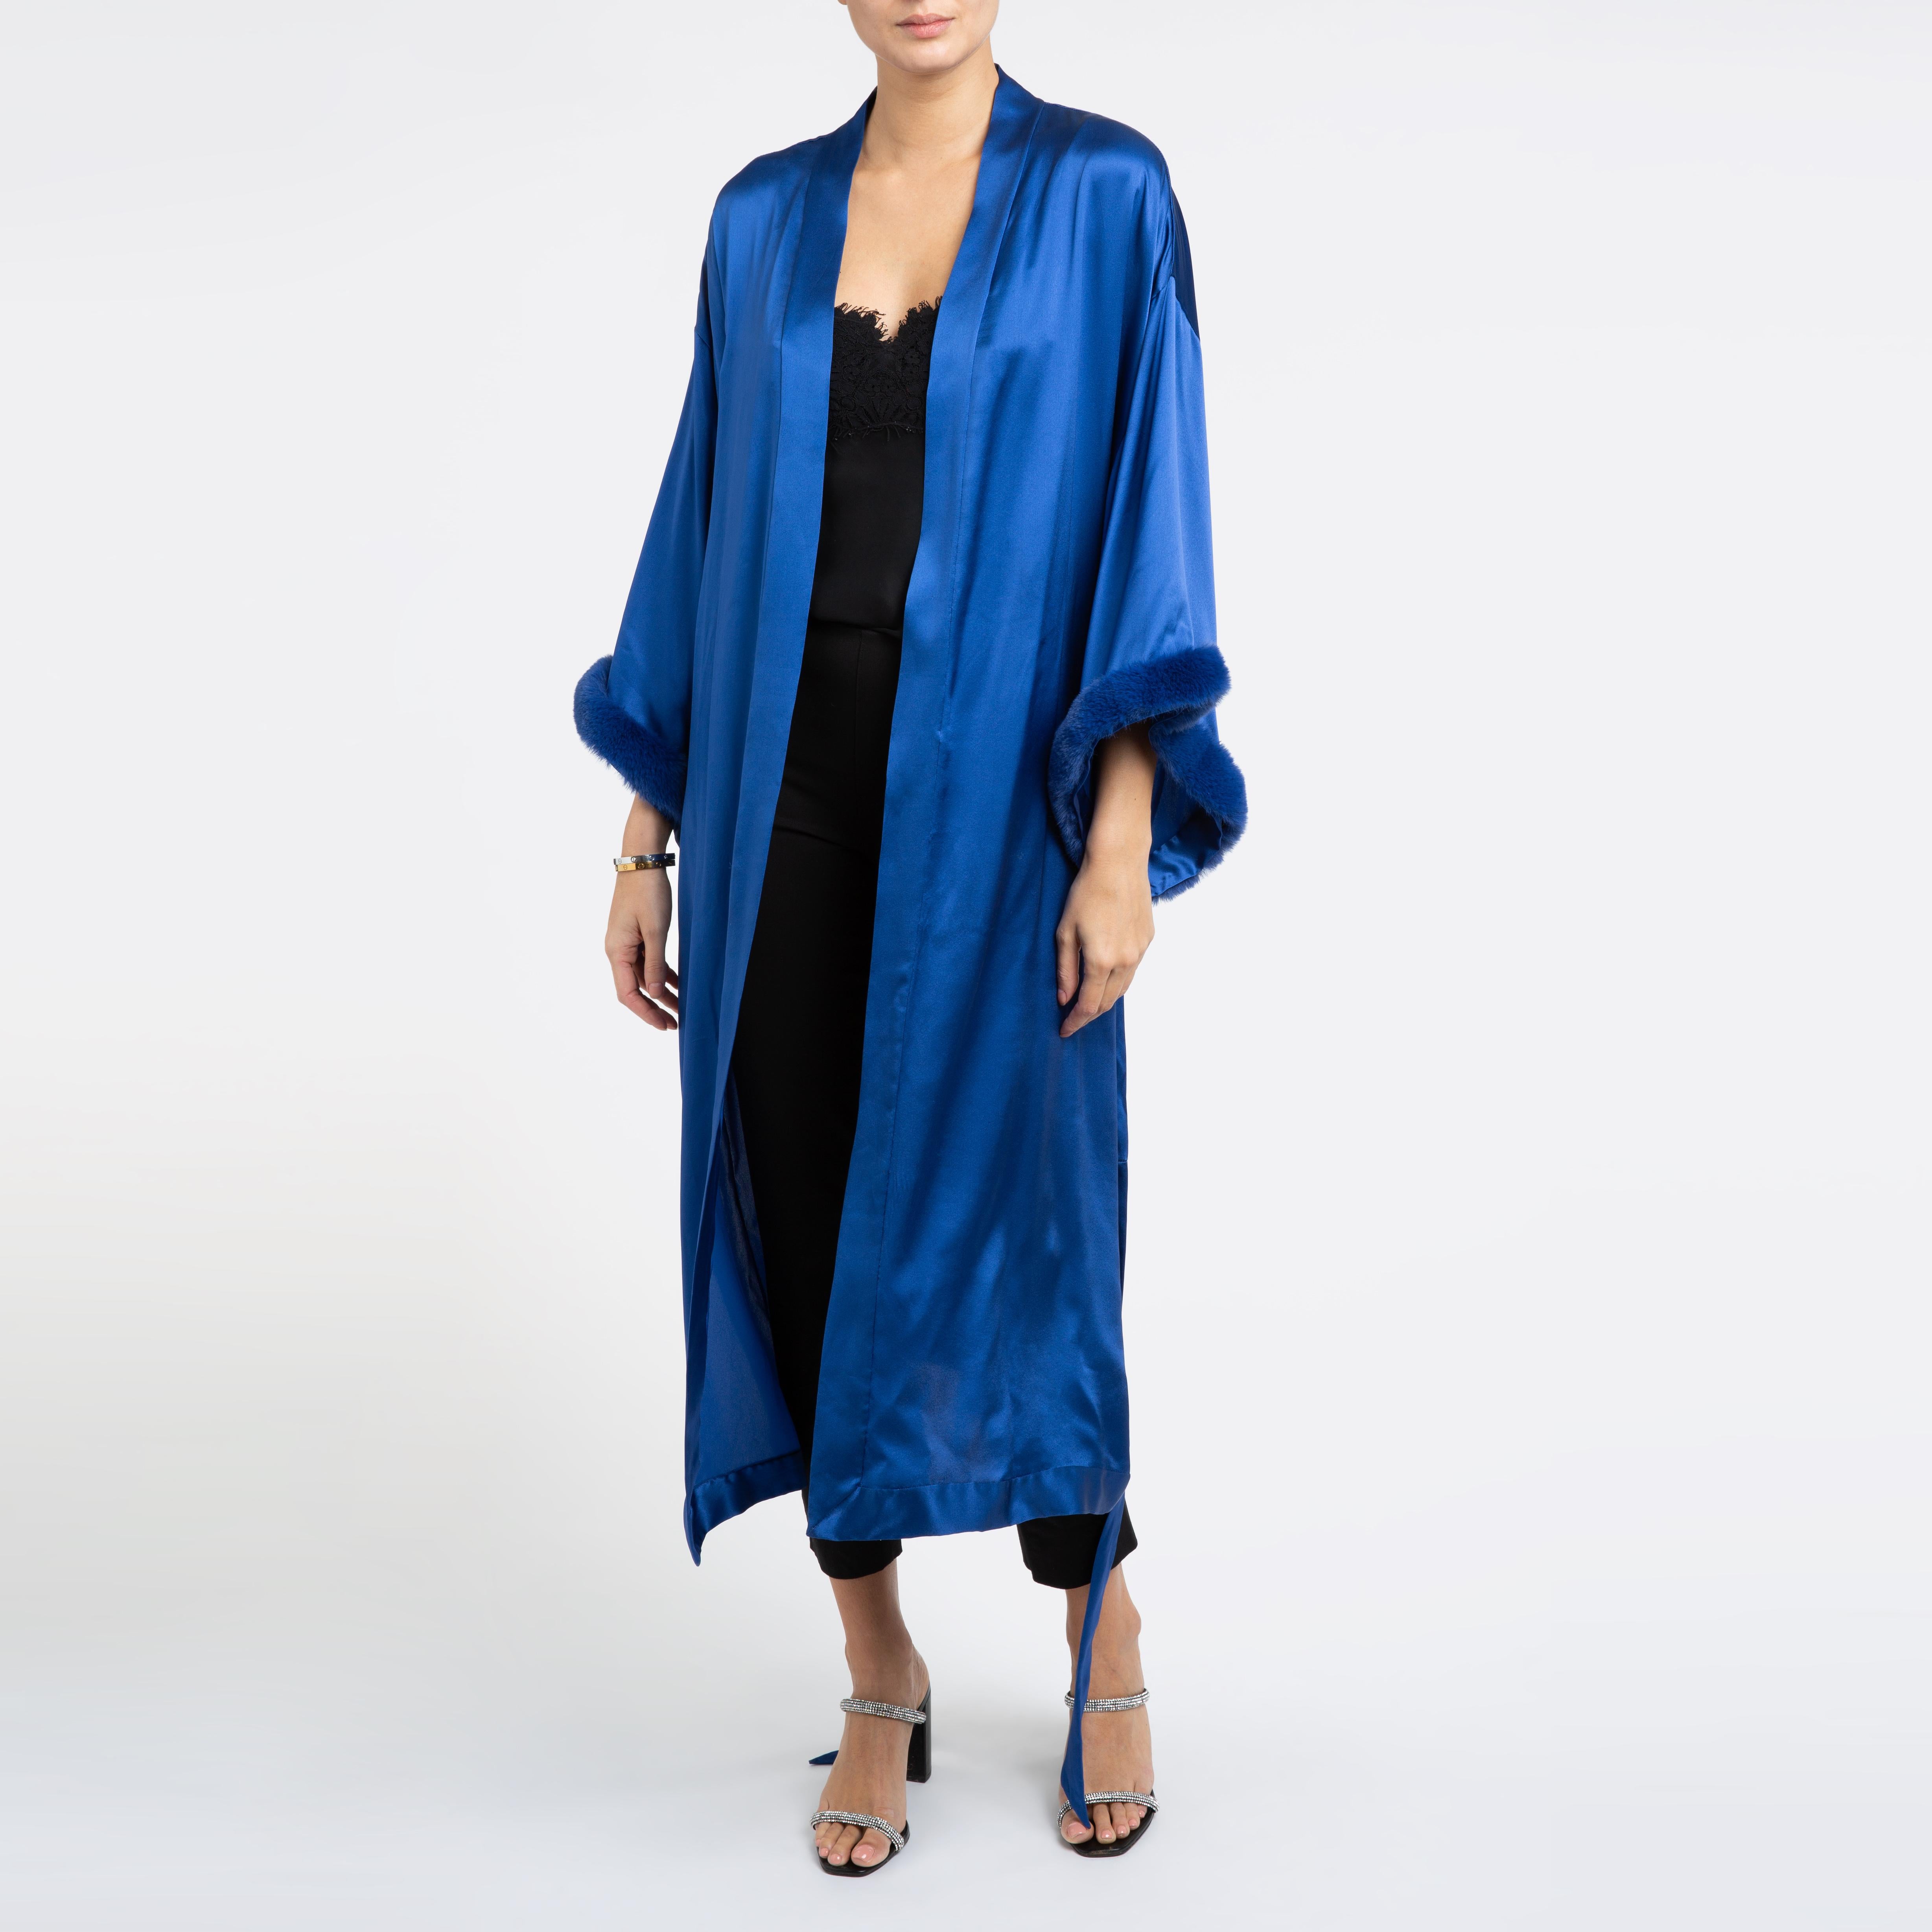 Kimono bleu Verheyen London en satin de soie italien avec fausse fourrure - Petit-médium 

Le kimono Verheyen London est la robe parfaite pour une soirée ou une robe manteau à porter avec une paire de jean et des talons.  
Fabriqué à la main à